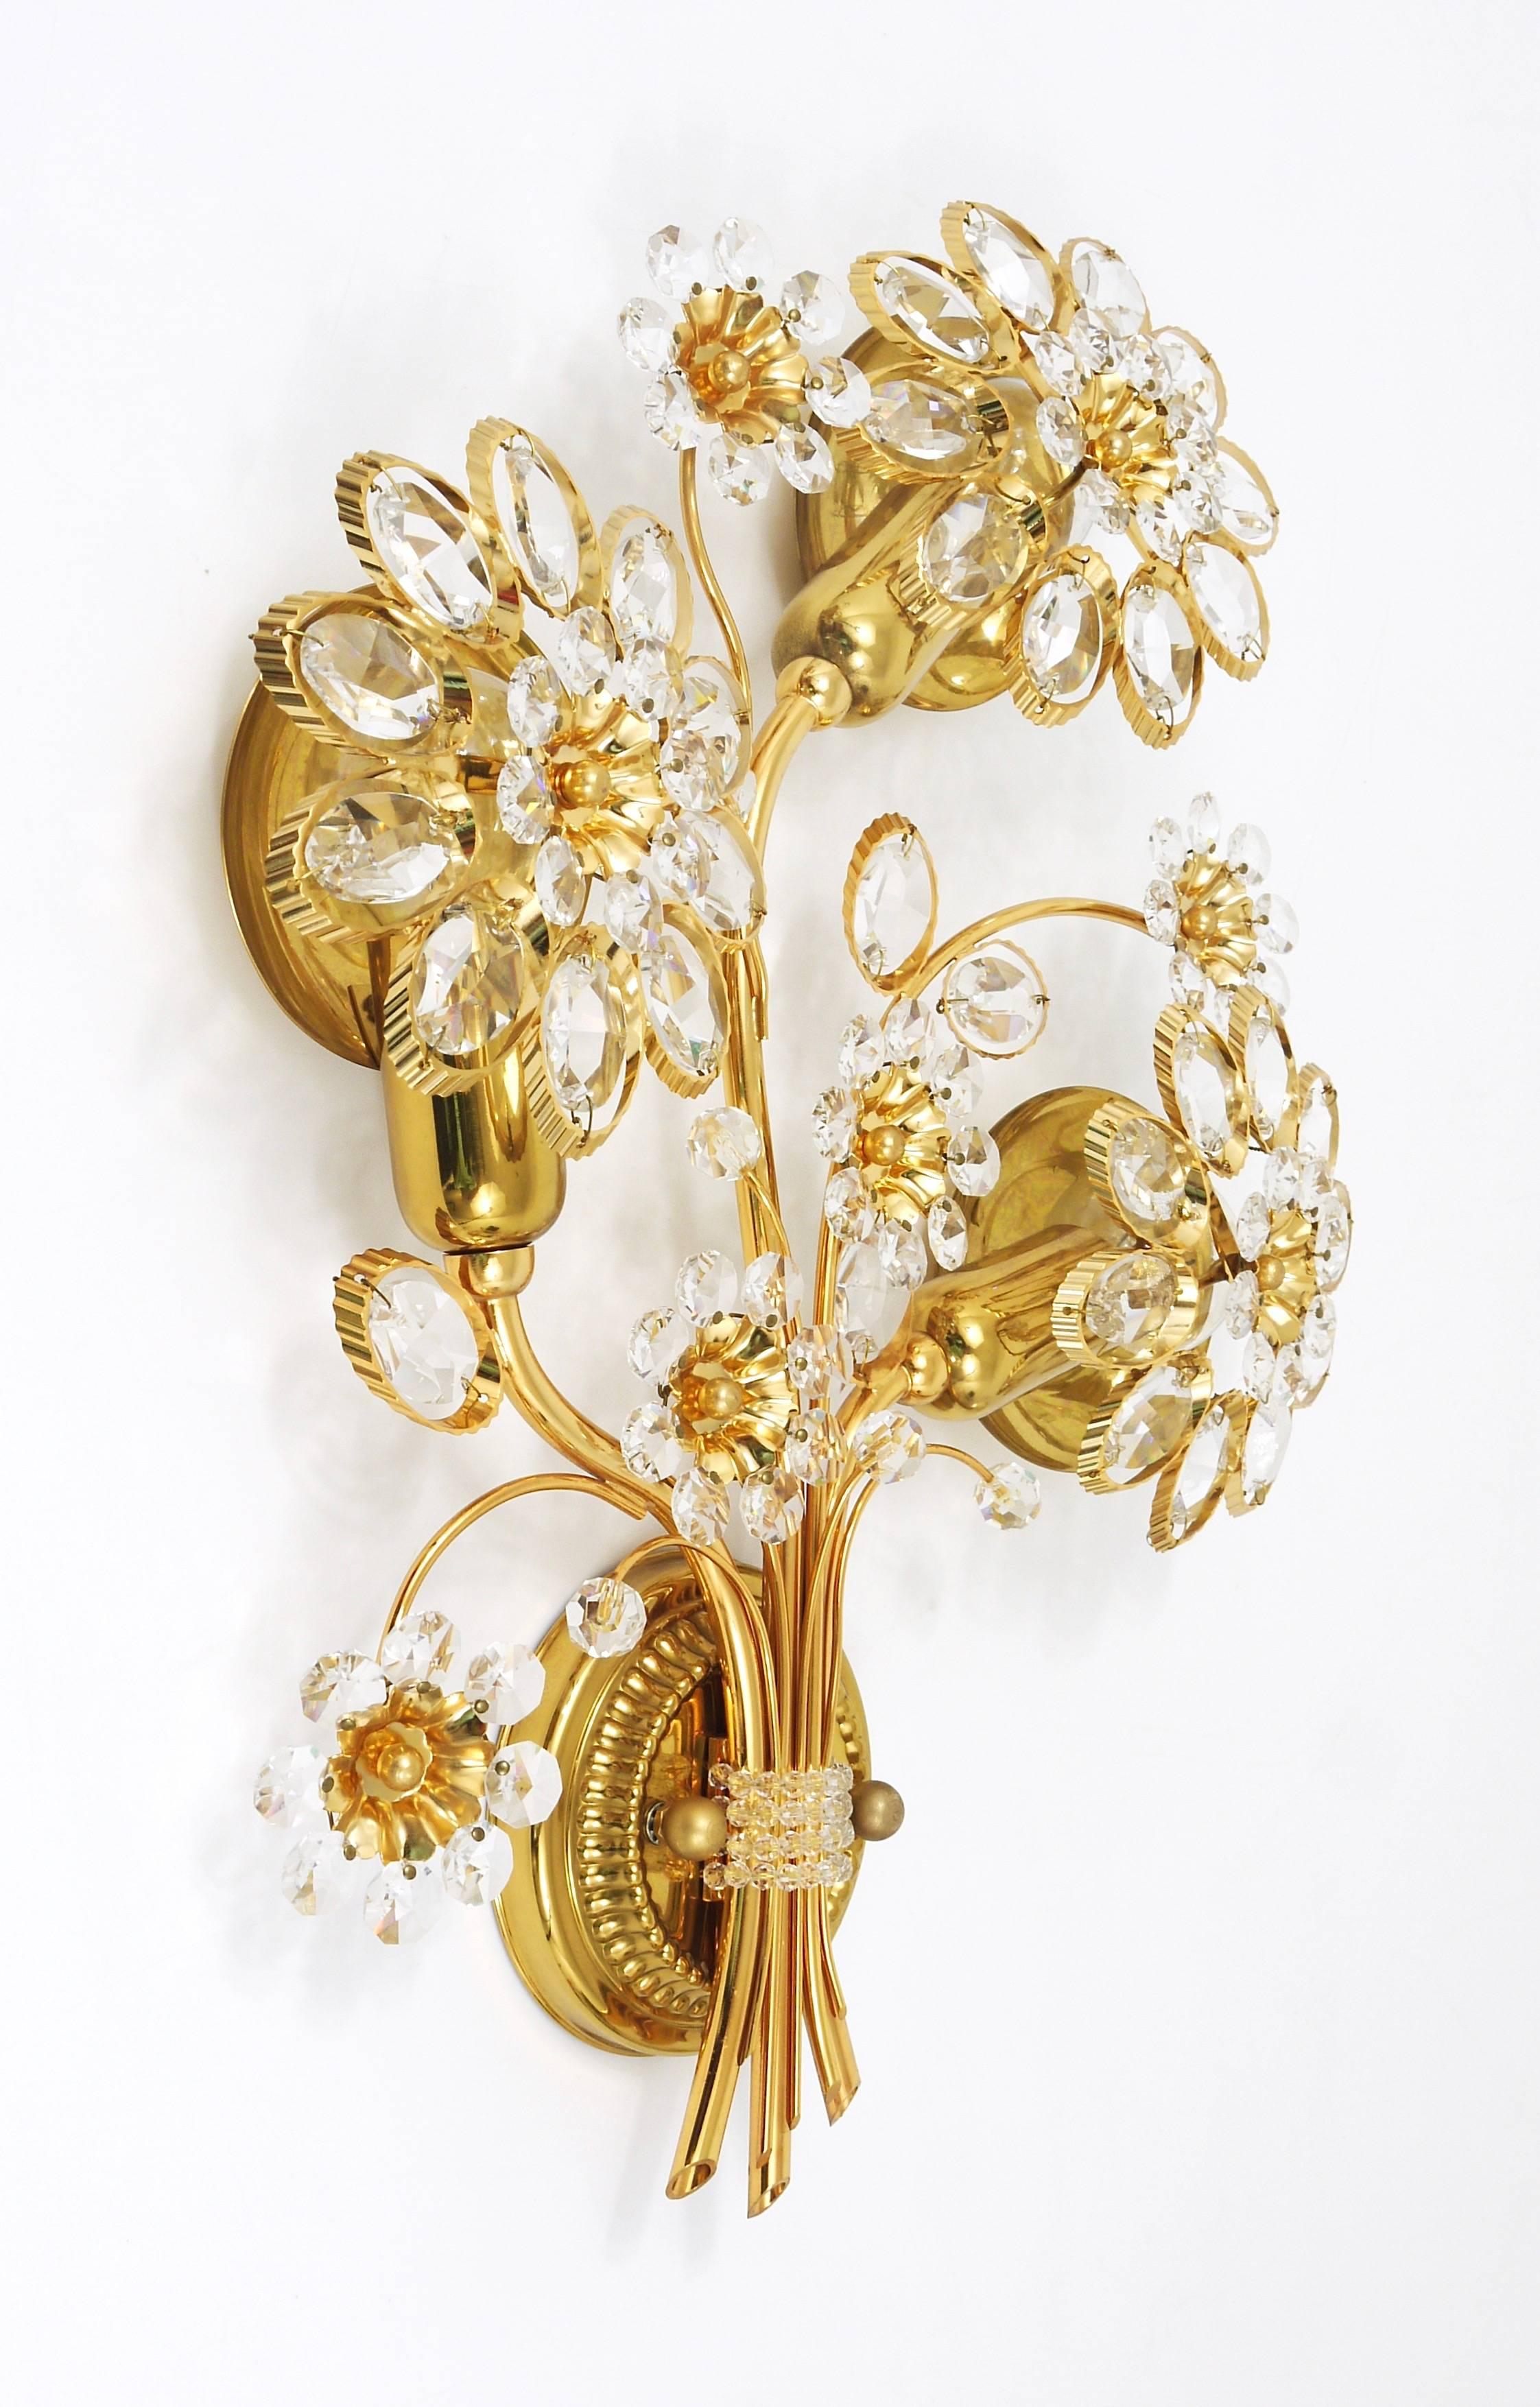 Une belle et énorme applique florale, fabriquée dans les années 1970 par Palwa, Allemagne. Fabriqué en laiton plaqué or avec des pétales en verre de cristal. En parfait état. Nous proposons d'autres appliques, miroirs et lustres Palwa assortis dans